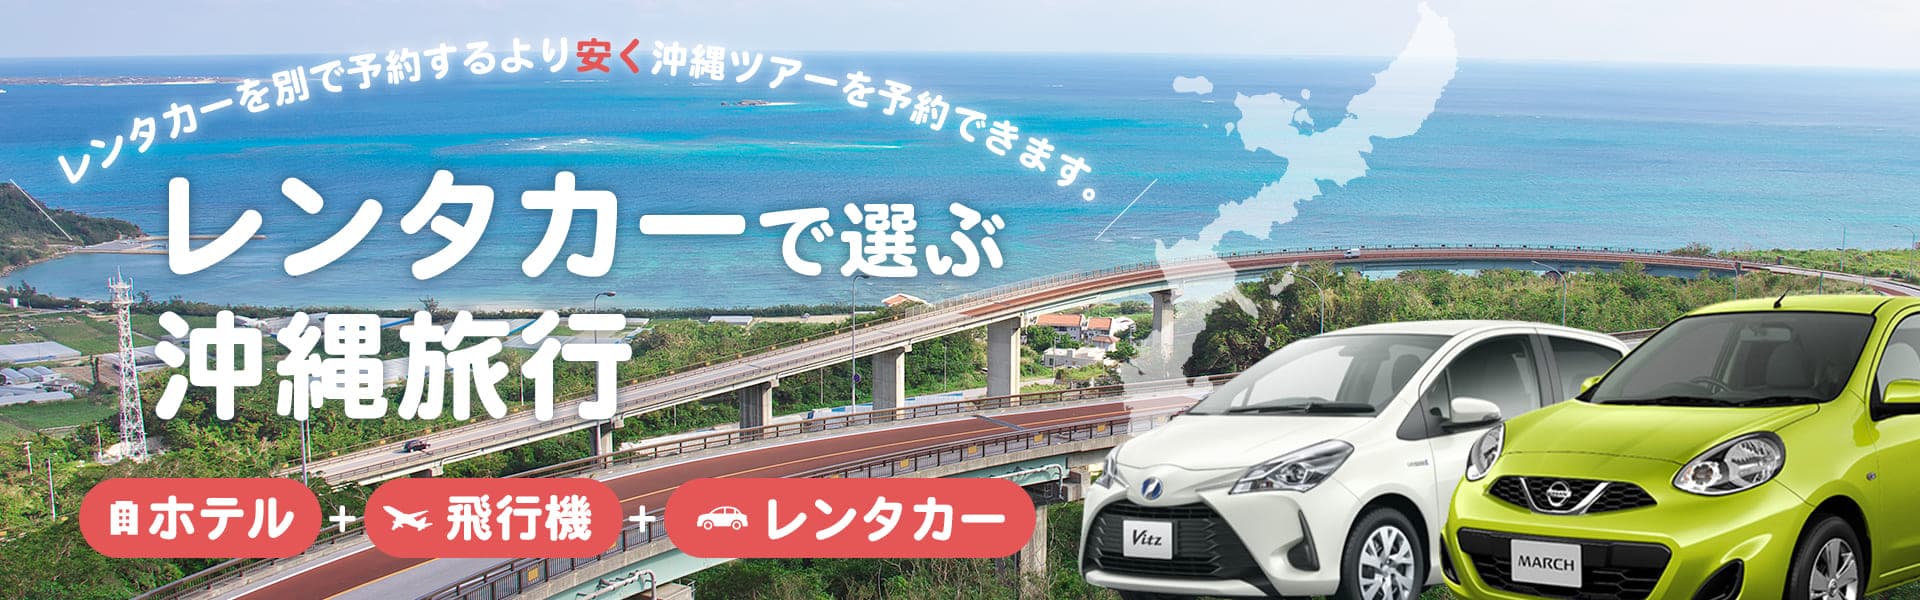 レンタカー付プランで沖縄旅行を満喫